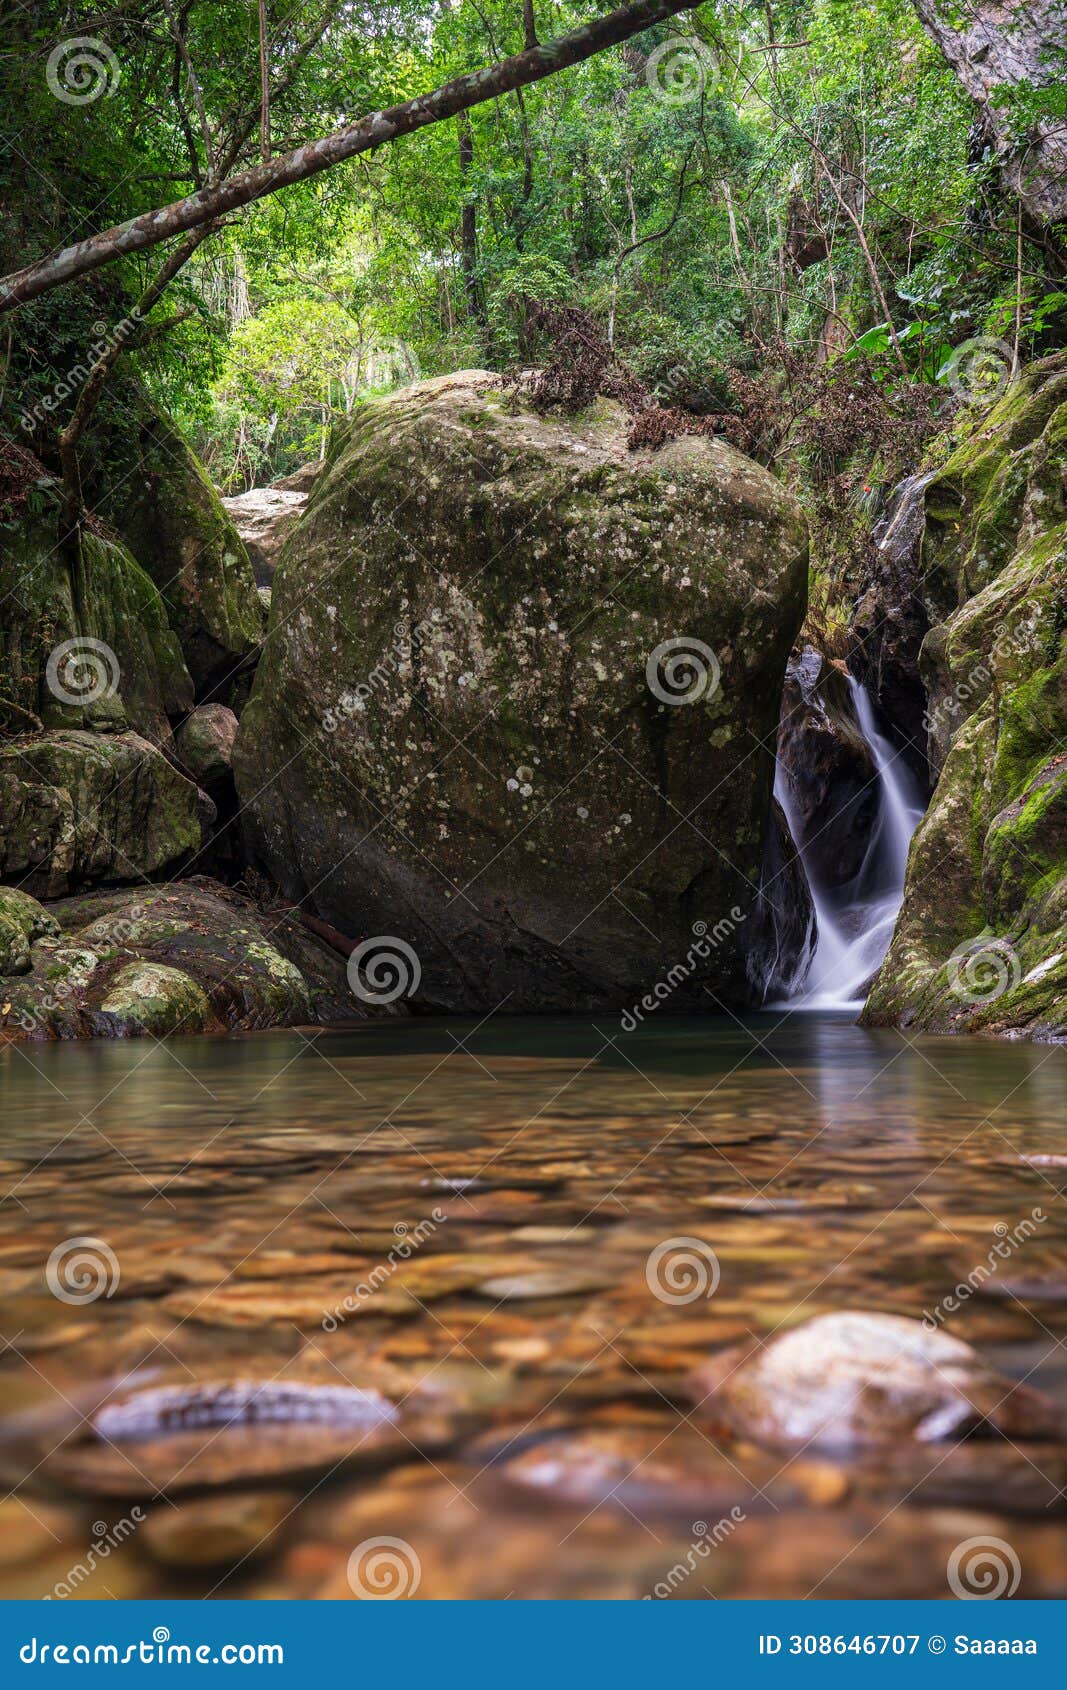 escena serena de la selva con arroyo y enorme roca redondeada.